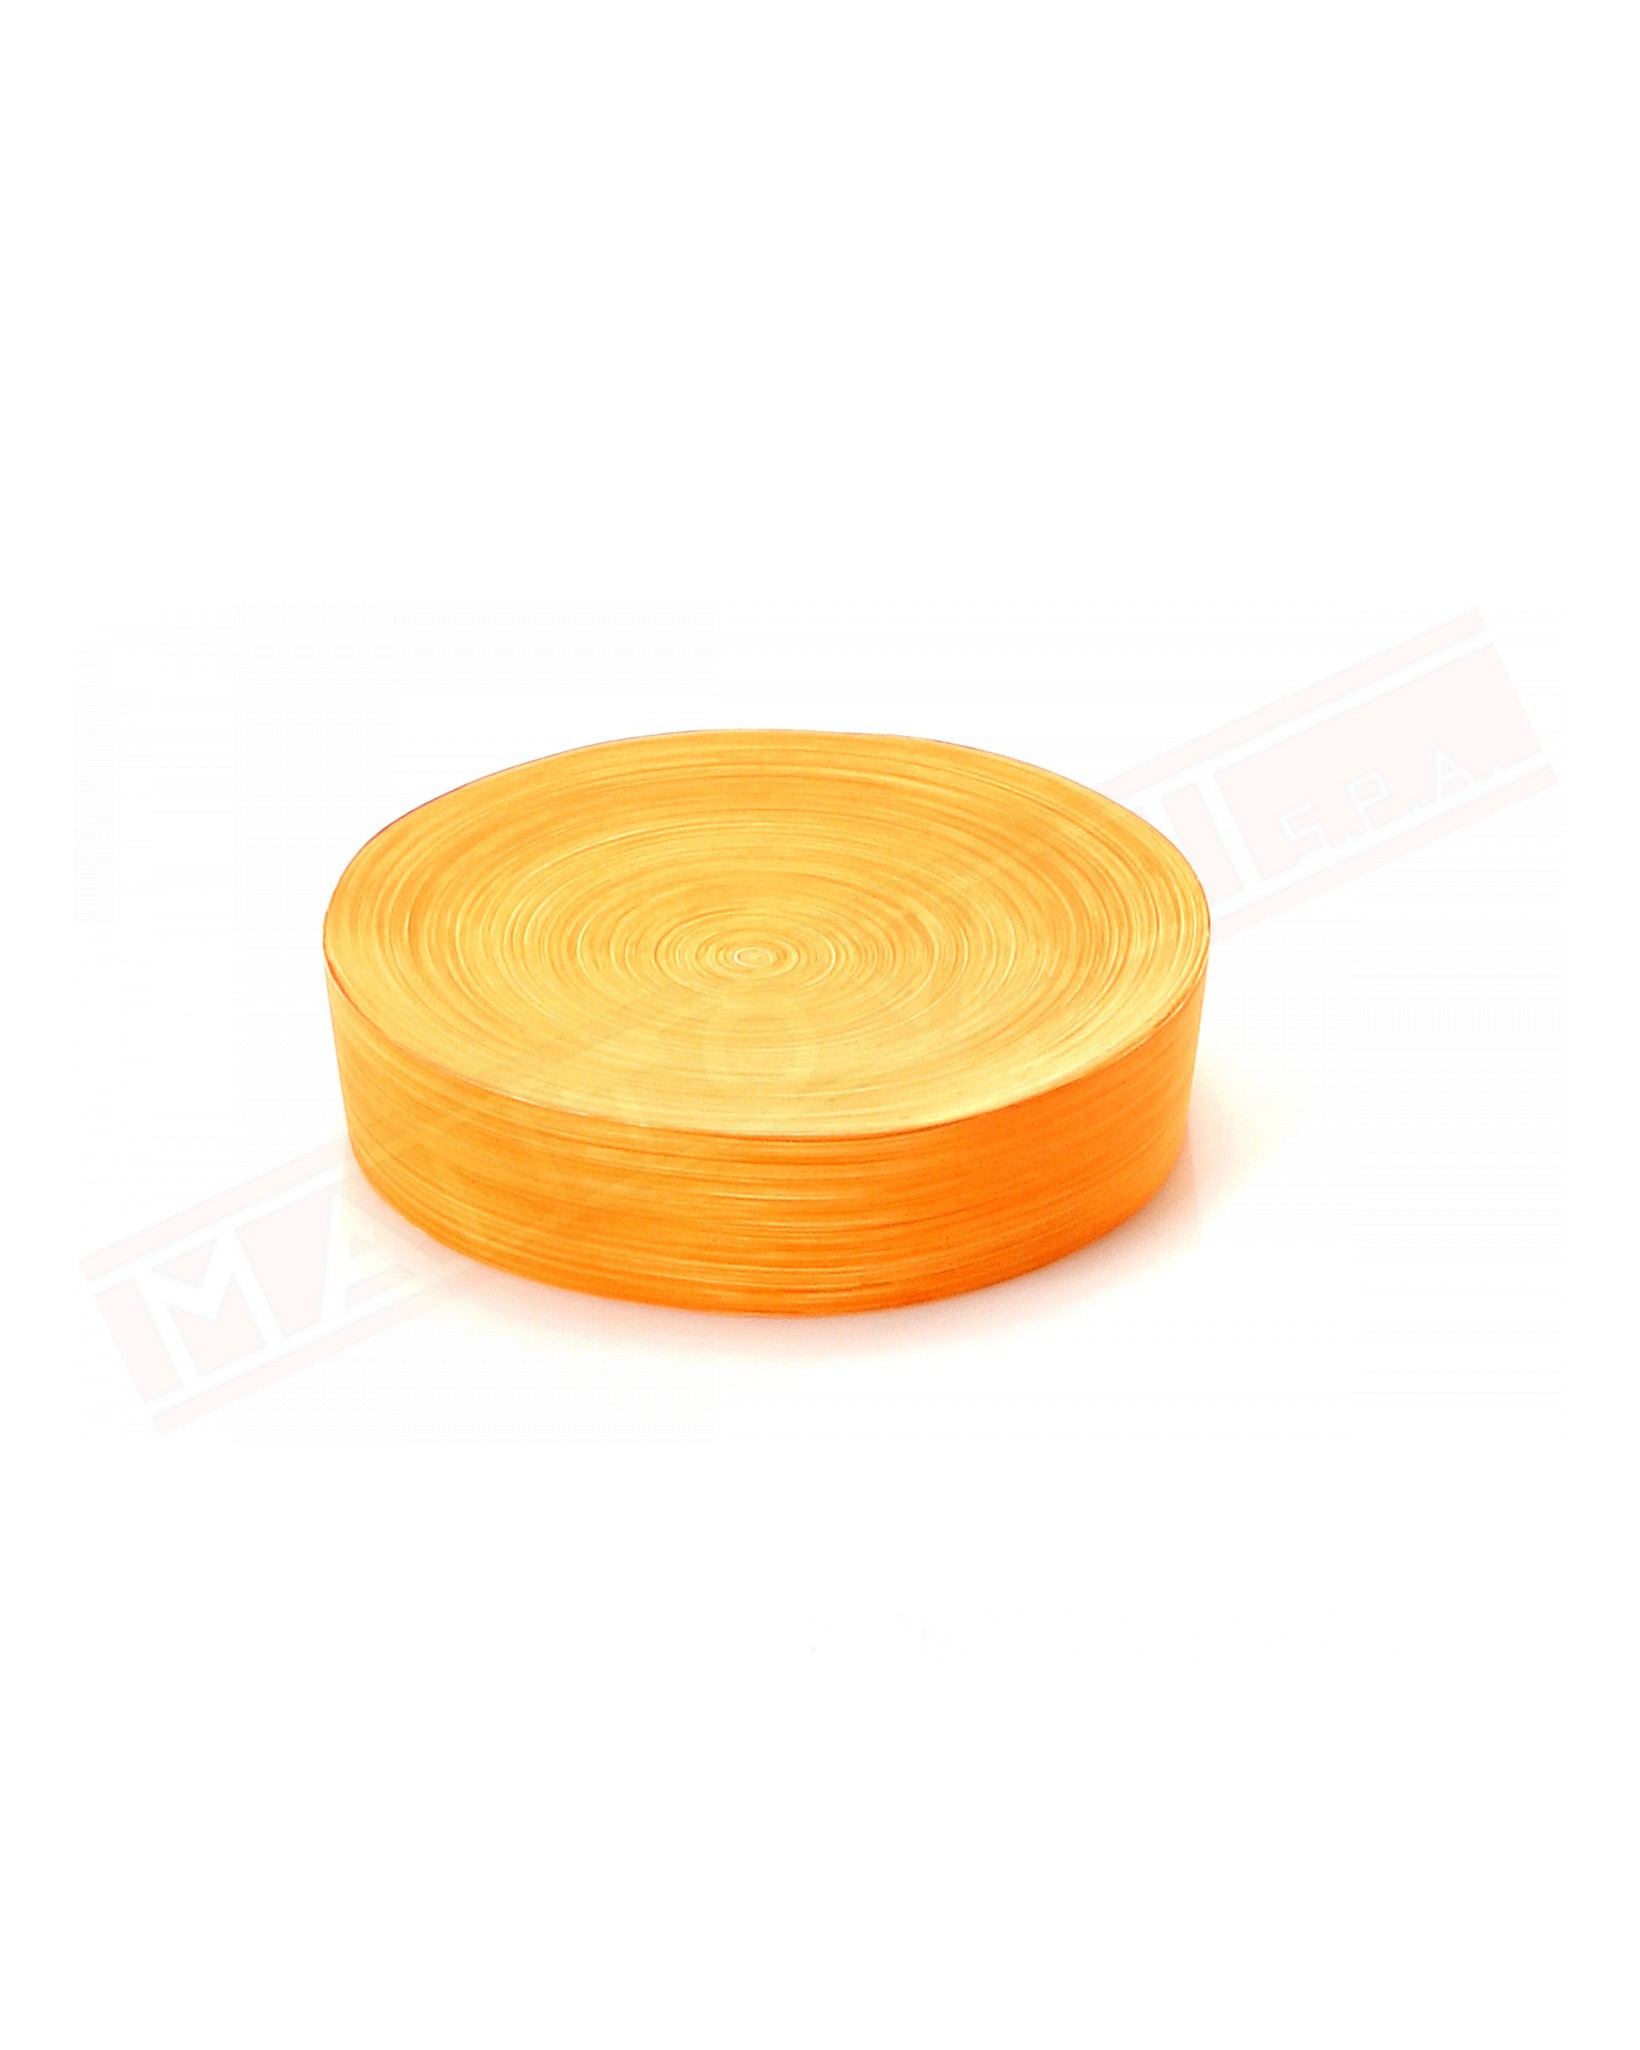 Gedy G. Sole portasapone in resina color arancio misure diametro art 11x2,9